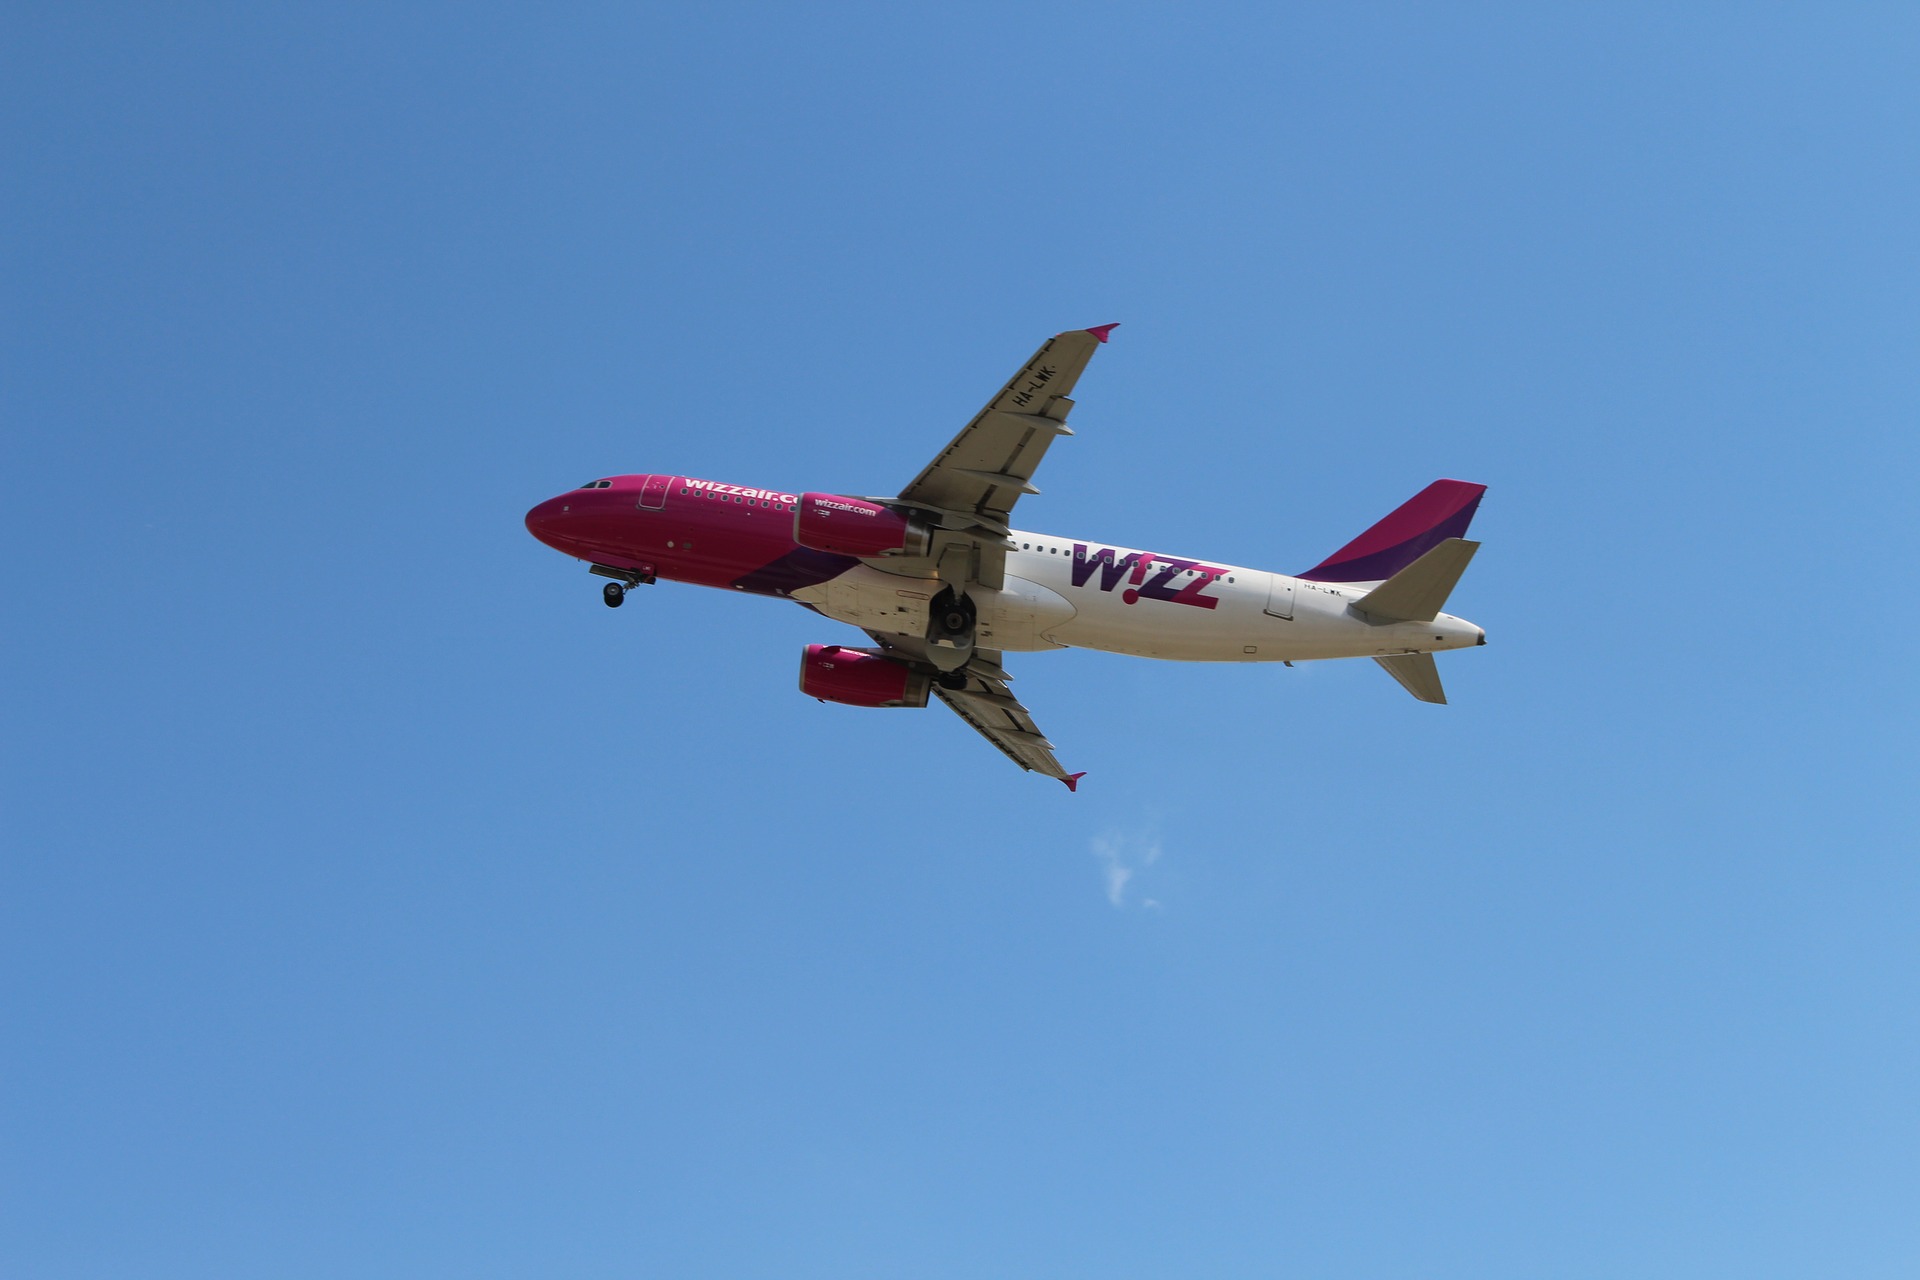 Zboruri anulate și stres - lipsă de personal la WizzAir și în industria companiilor aeriene